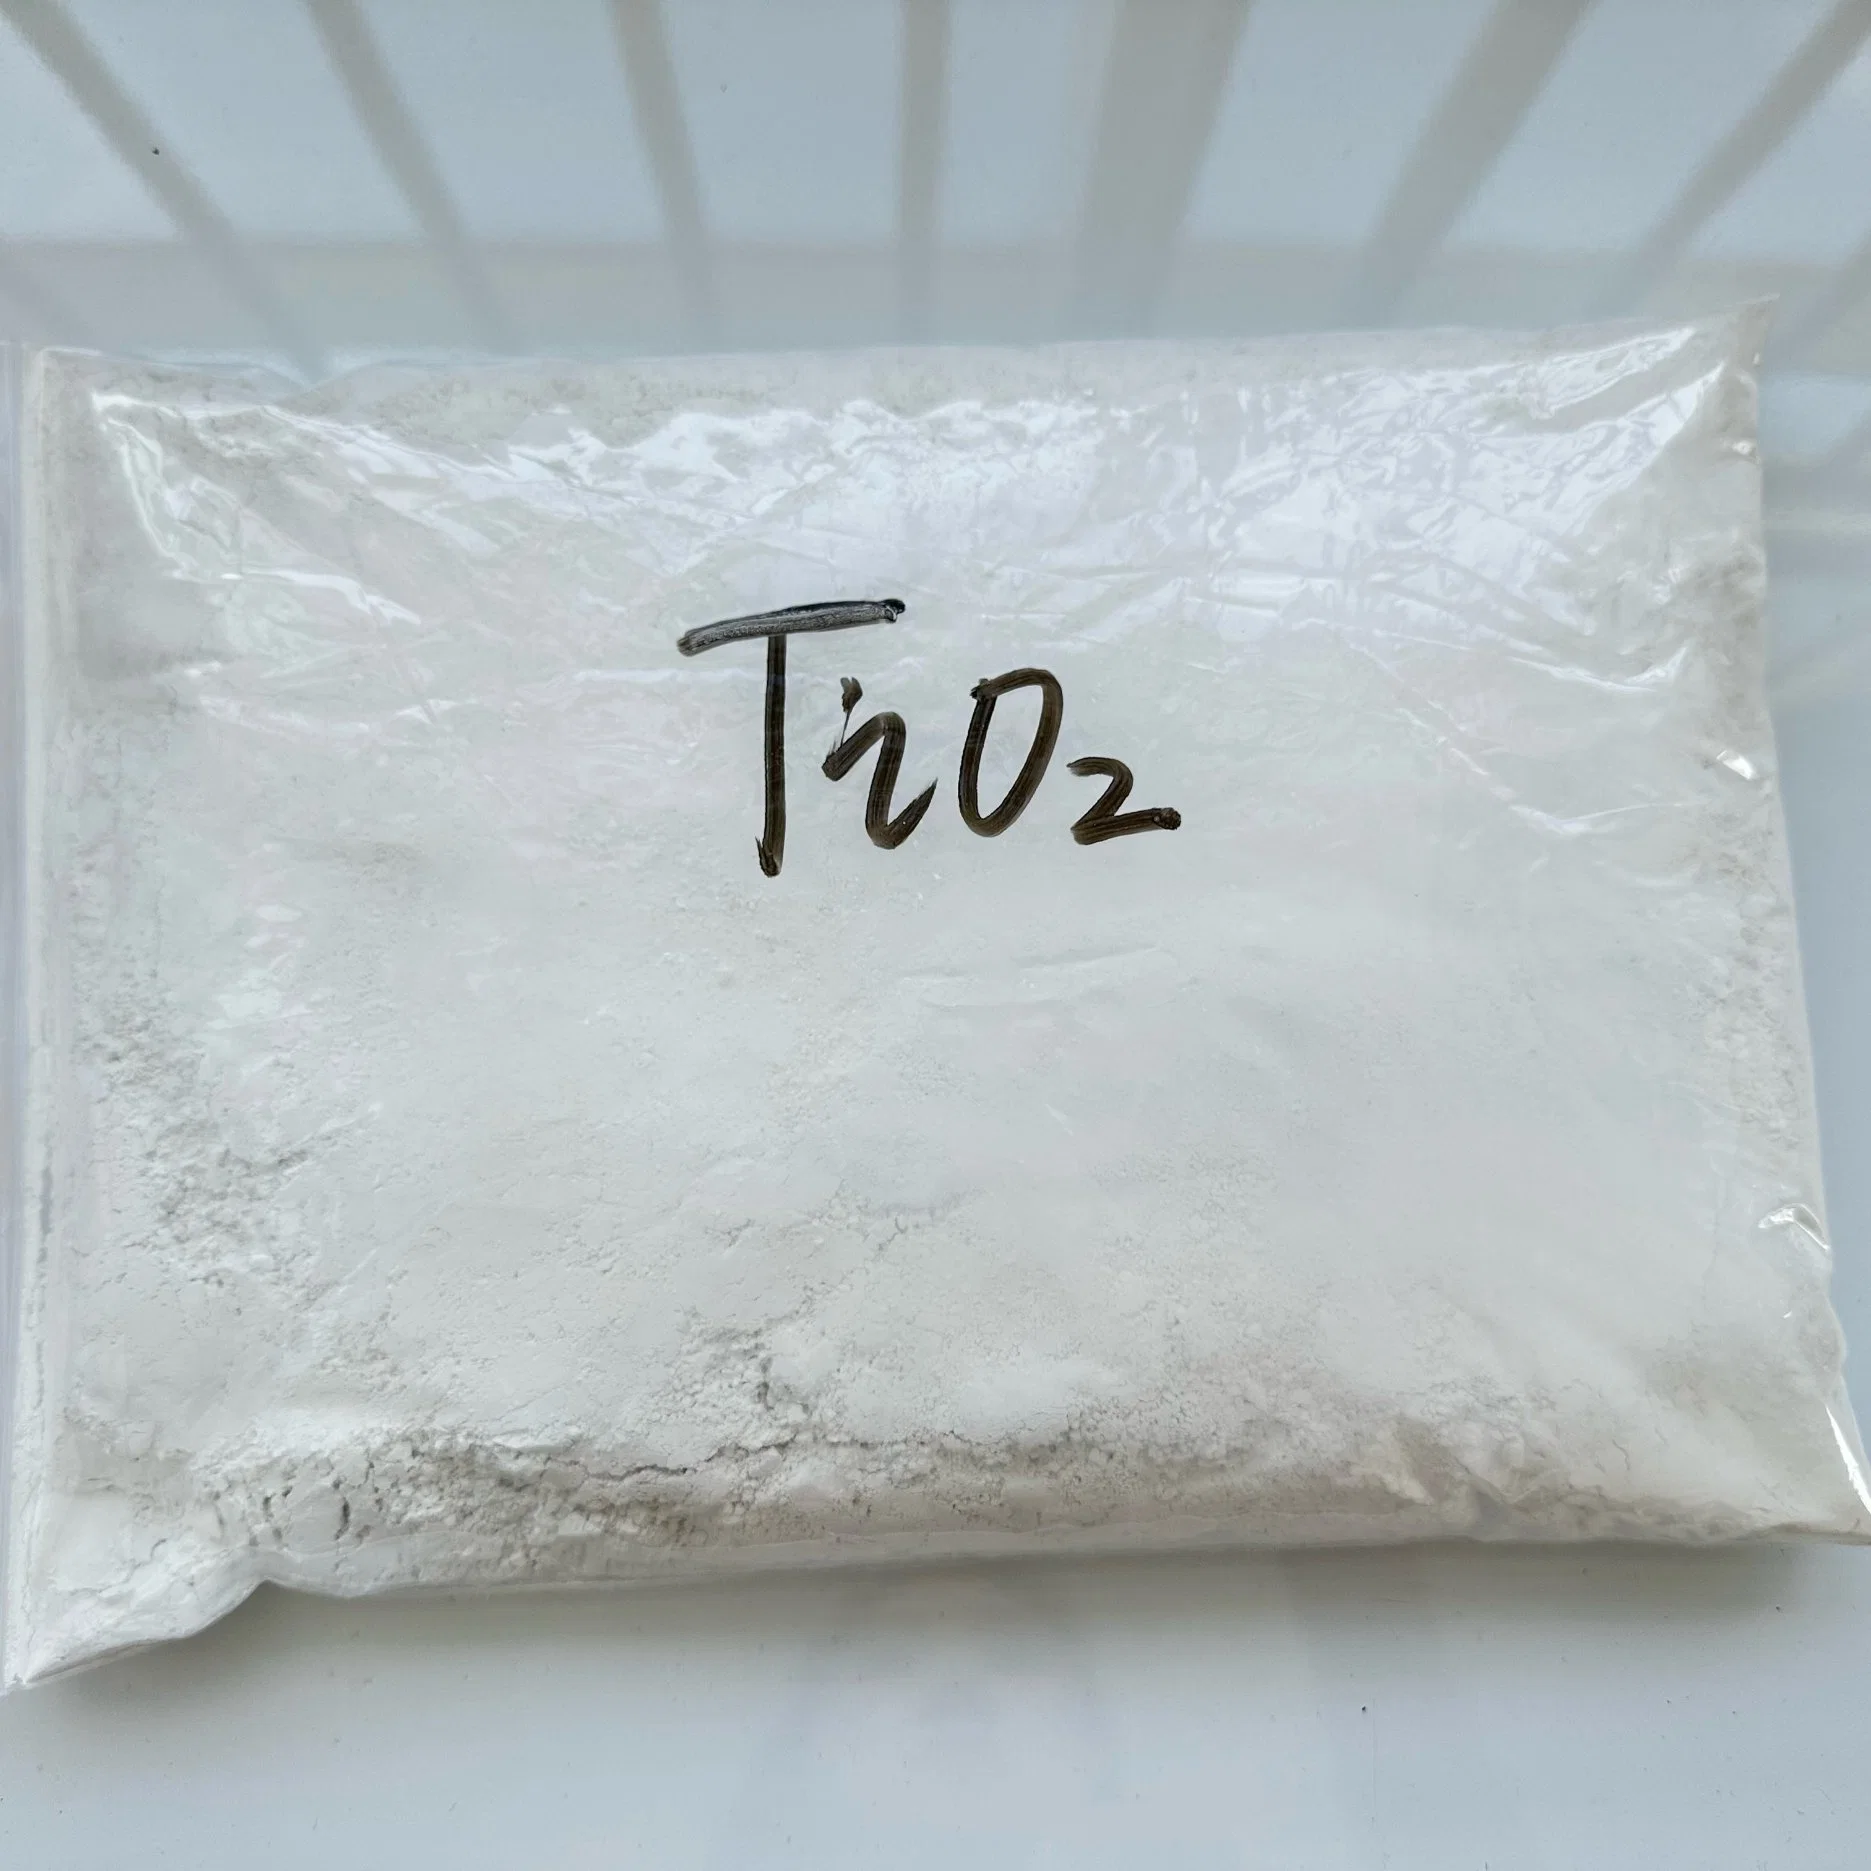 Pigmento de dióxido de titânio rutilo de alta qualidade para tinta fabricante químico usado Matéria-prima dióxido de titânio TiO2